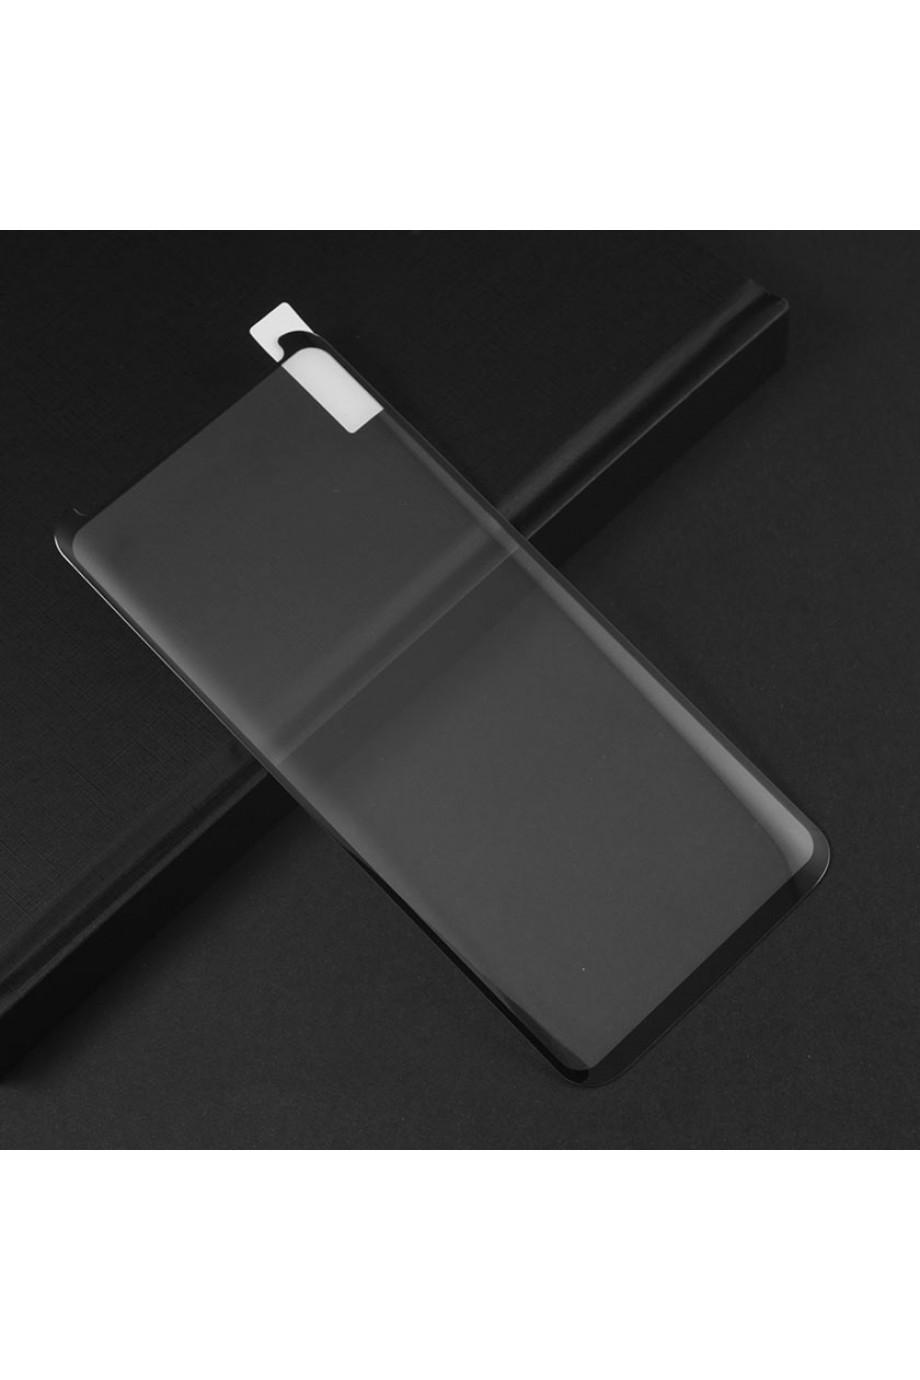 Защитное стекло 3D Mikomo для Samsung Galaxy S8 Plus, черная рамка, полный клей